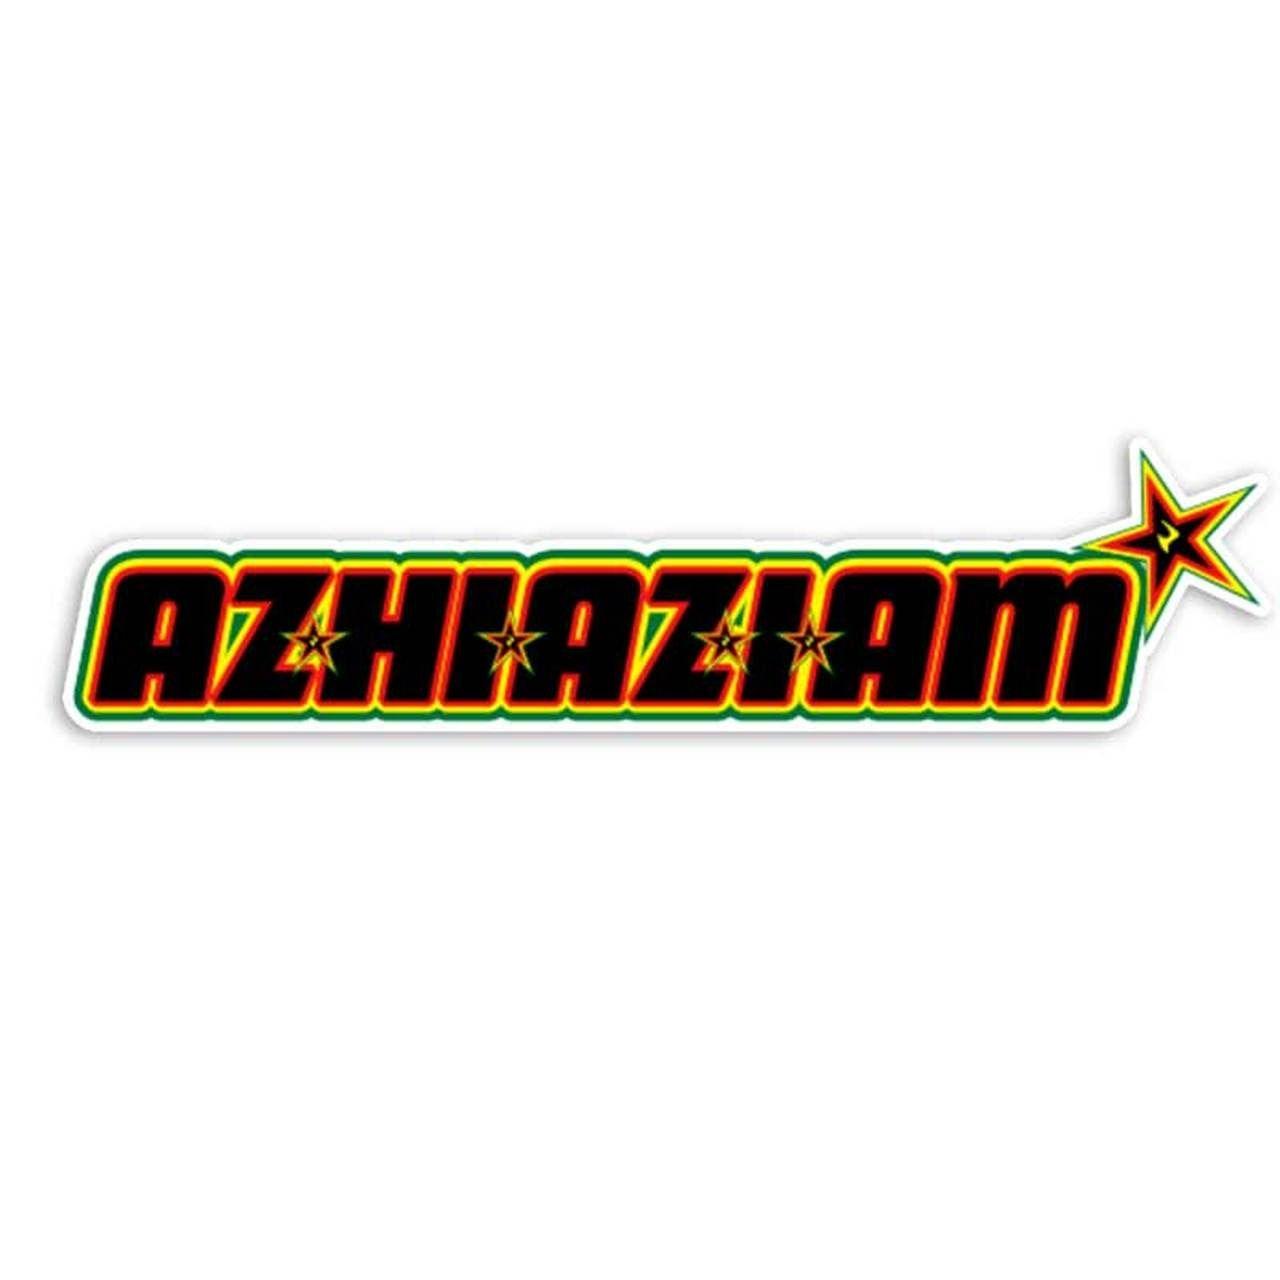 Lighter Logo - Azhiaziam RASTA Lighter LOGO DIE CUT STICKER!